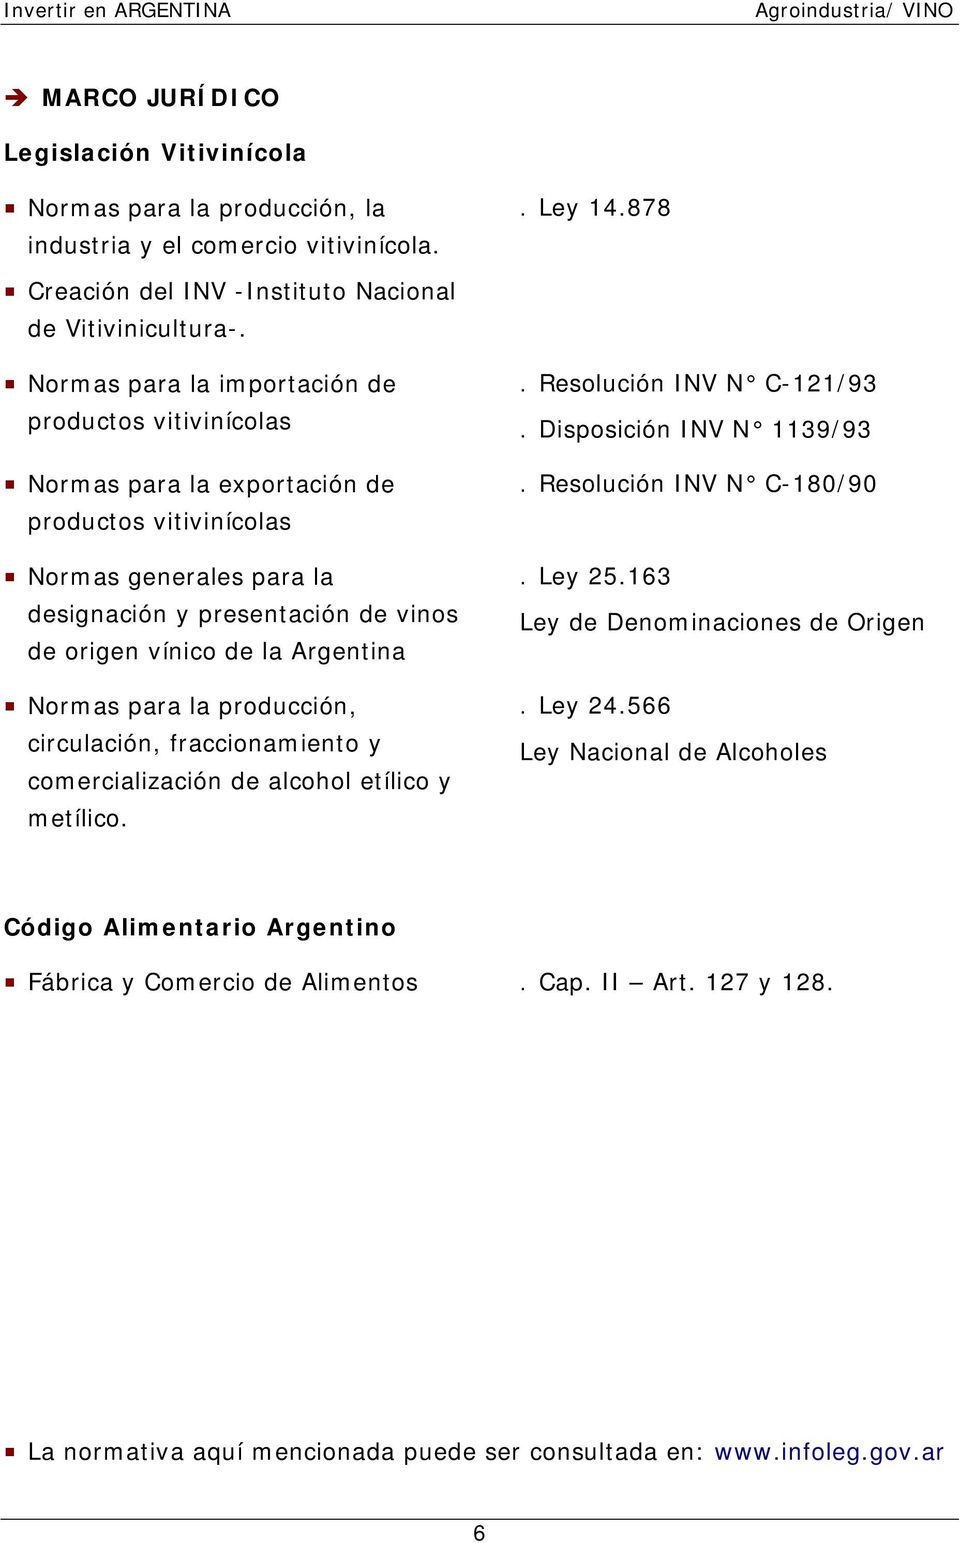 Argentina Normas para la producción, circulación, fraccionamiento y comercialización de alcohol etílico y metílico.. Resolución INV N C-121/93. Disposición INV N 1139/93. Resolución INV N C-180/90.